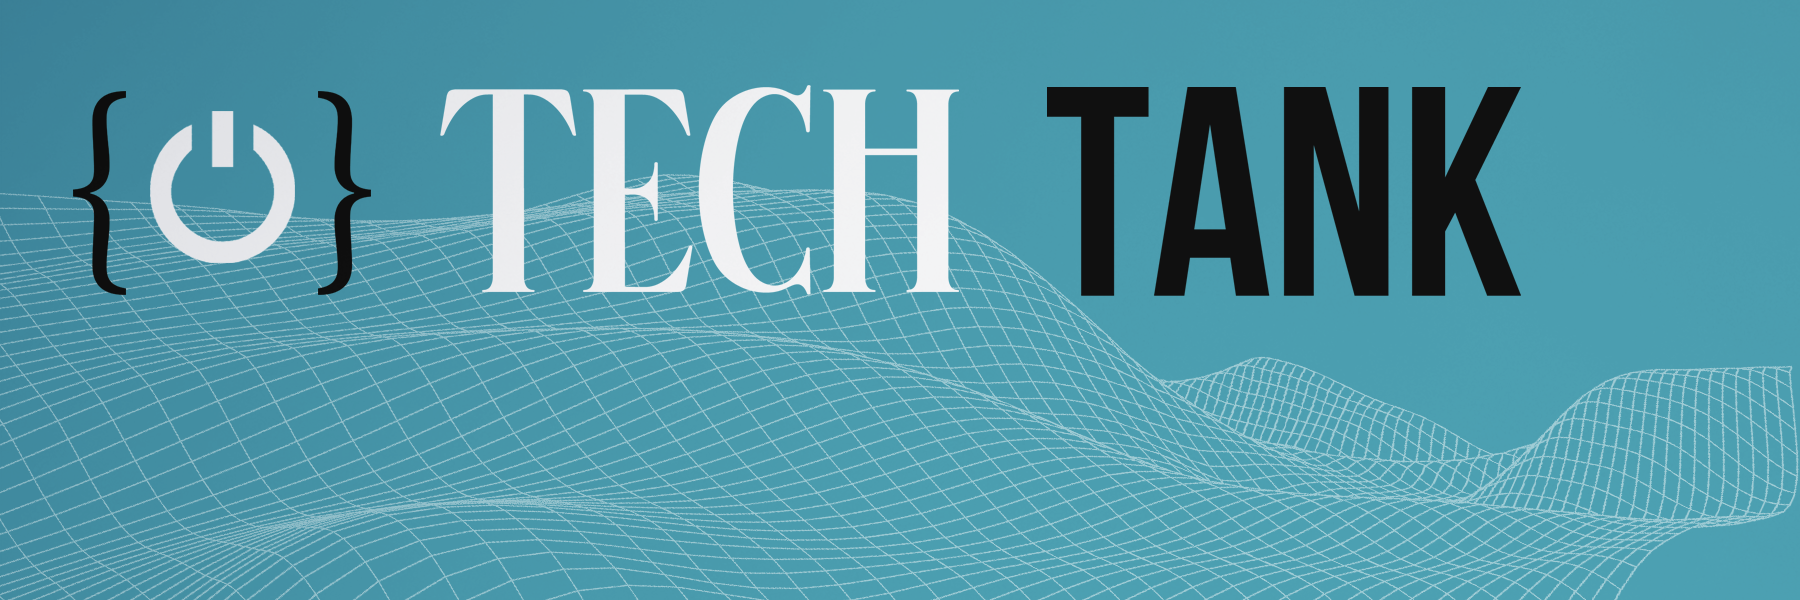 tech tank logo